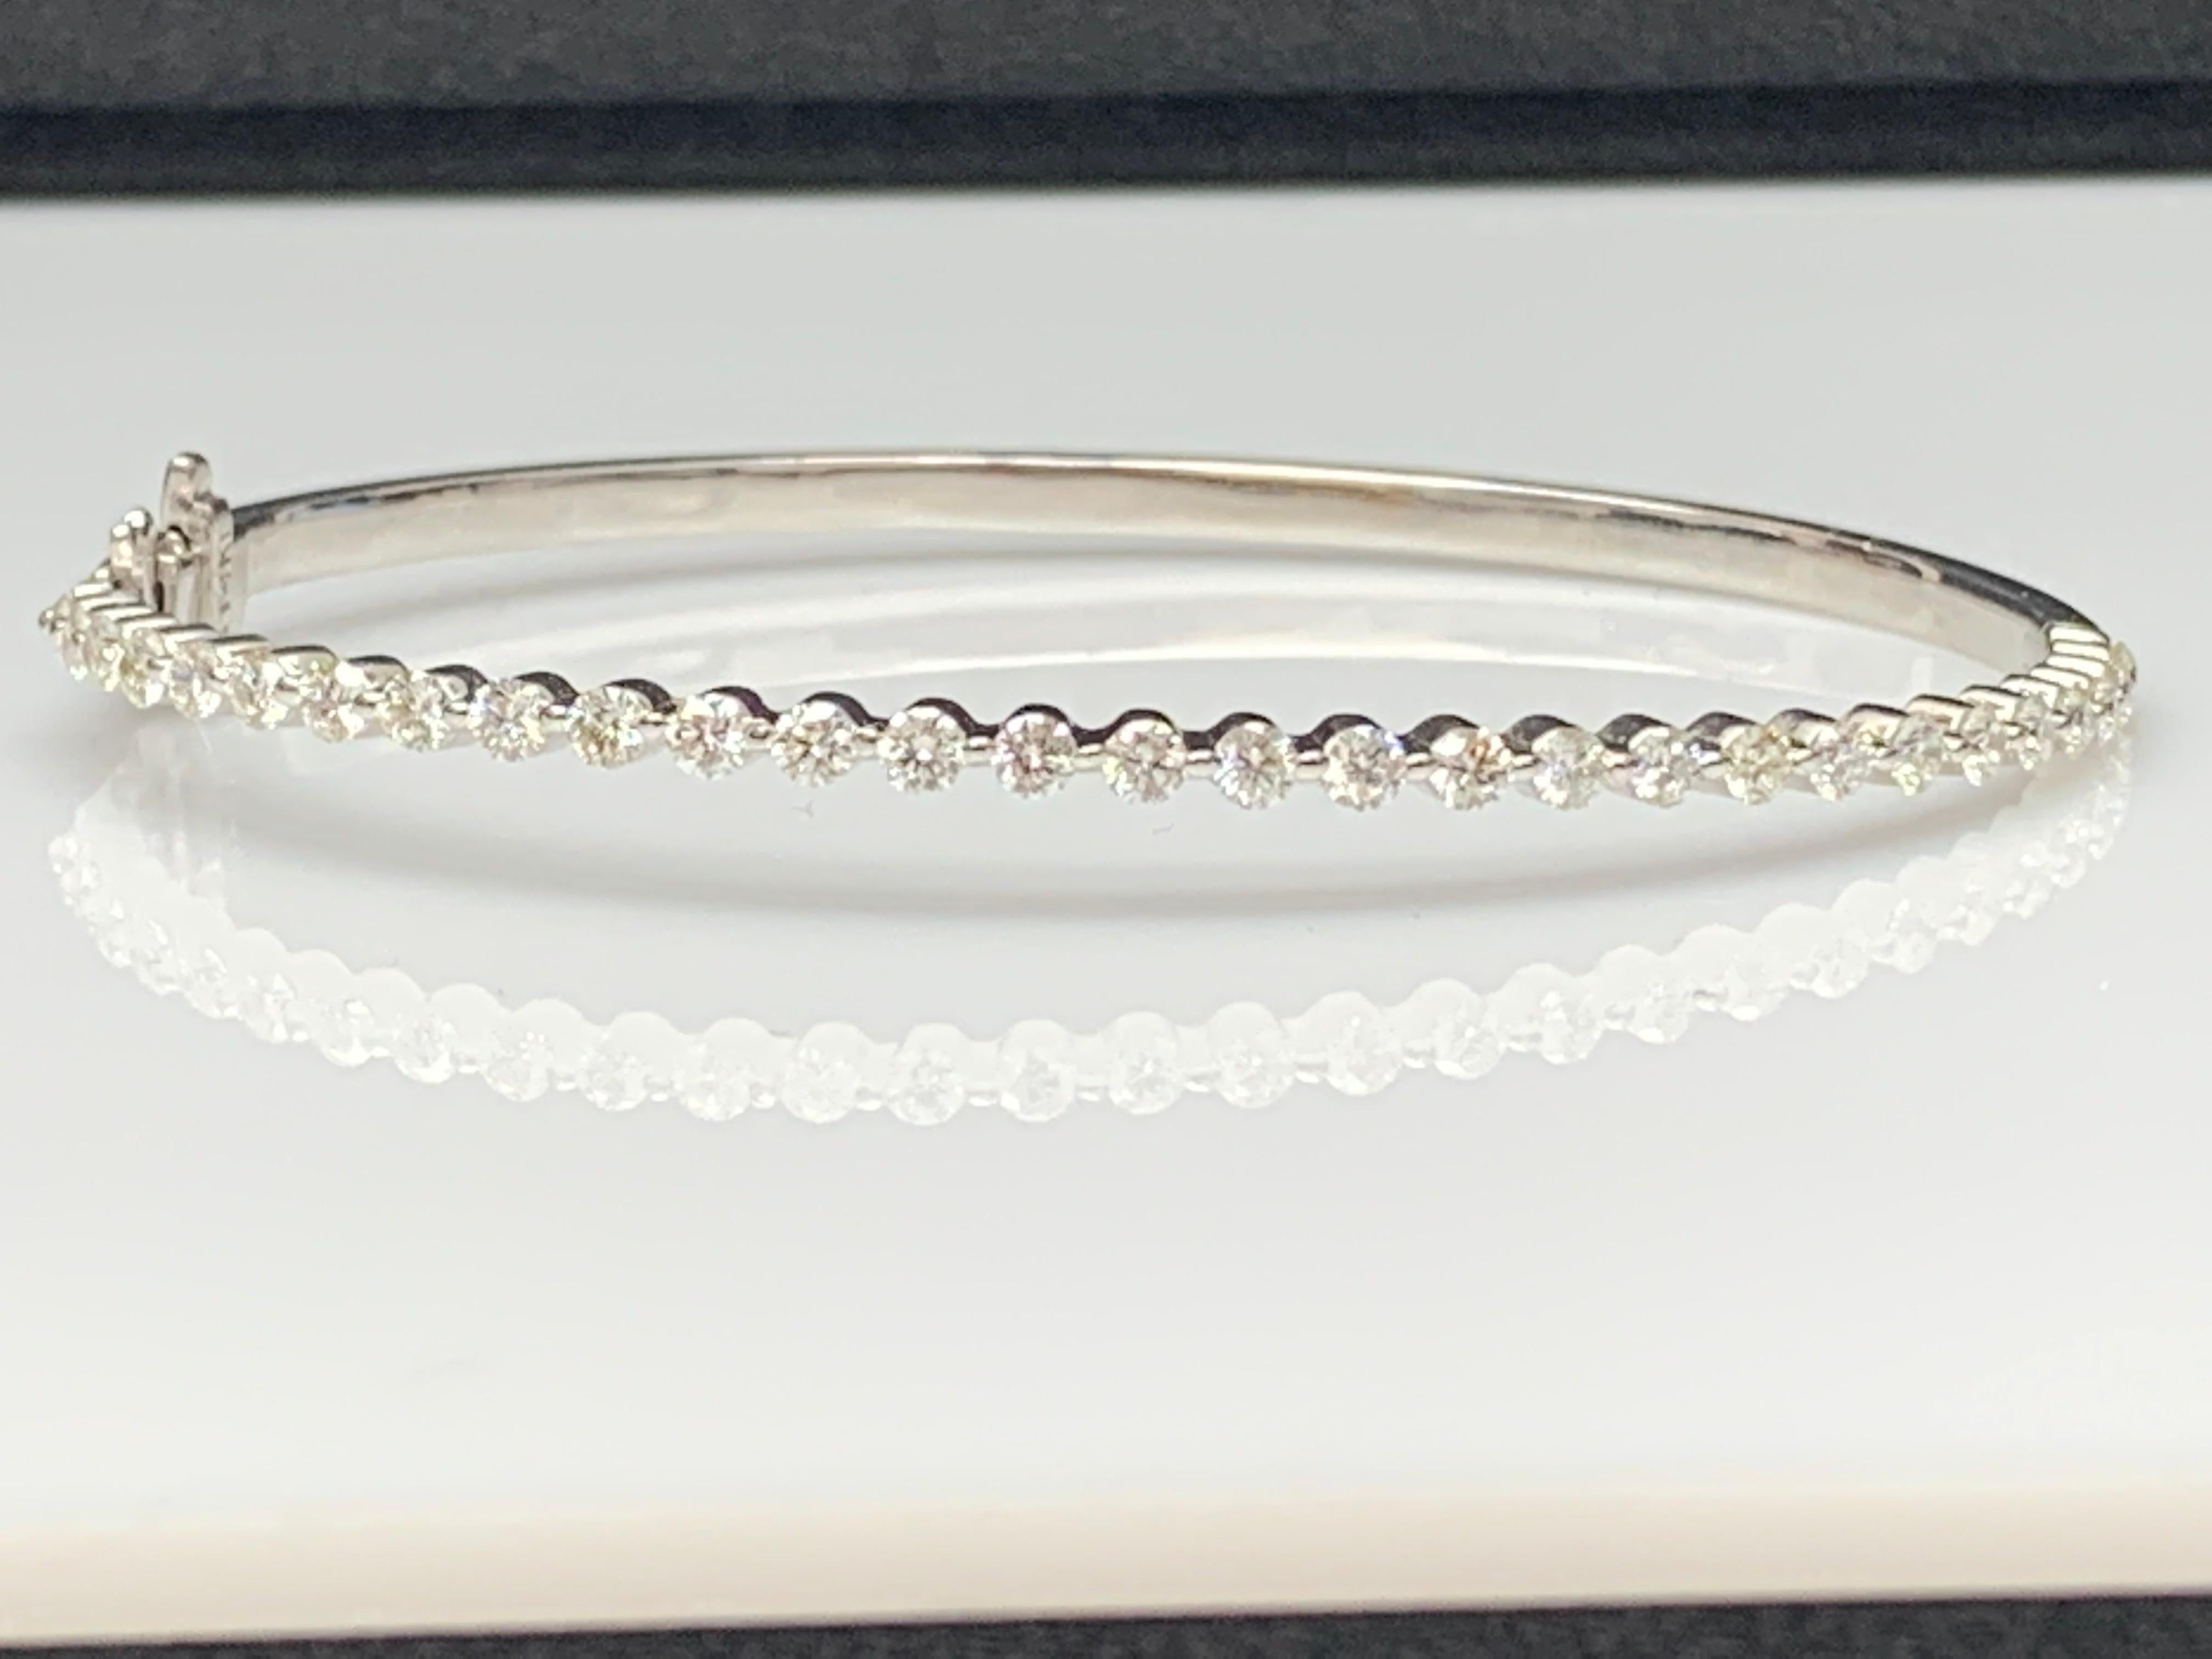 Superbe bracelet bangle serti de 29 diamants taille brillant pesant 1.75 carat au total. Serti en or blanc 14k poli. Double mécanisme de verrouillage pour une sécurité maximale. Une pièce simple mais éblouissante.

Tous les diamants sont de couleur